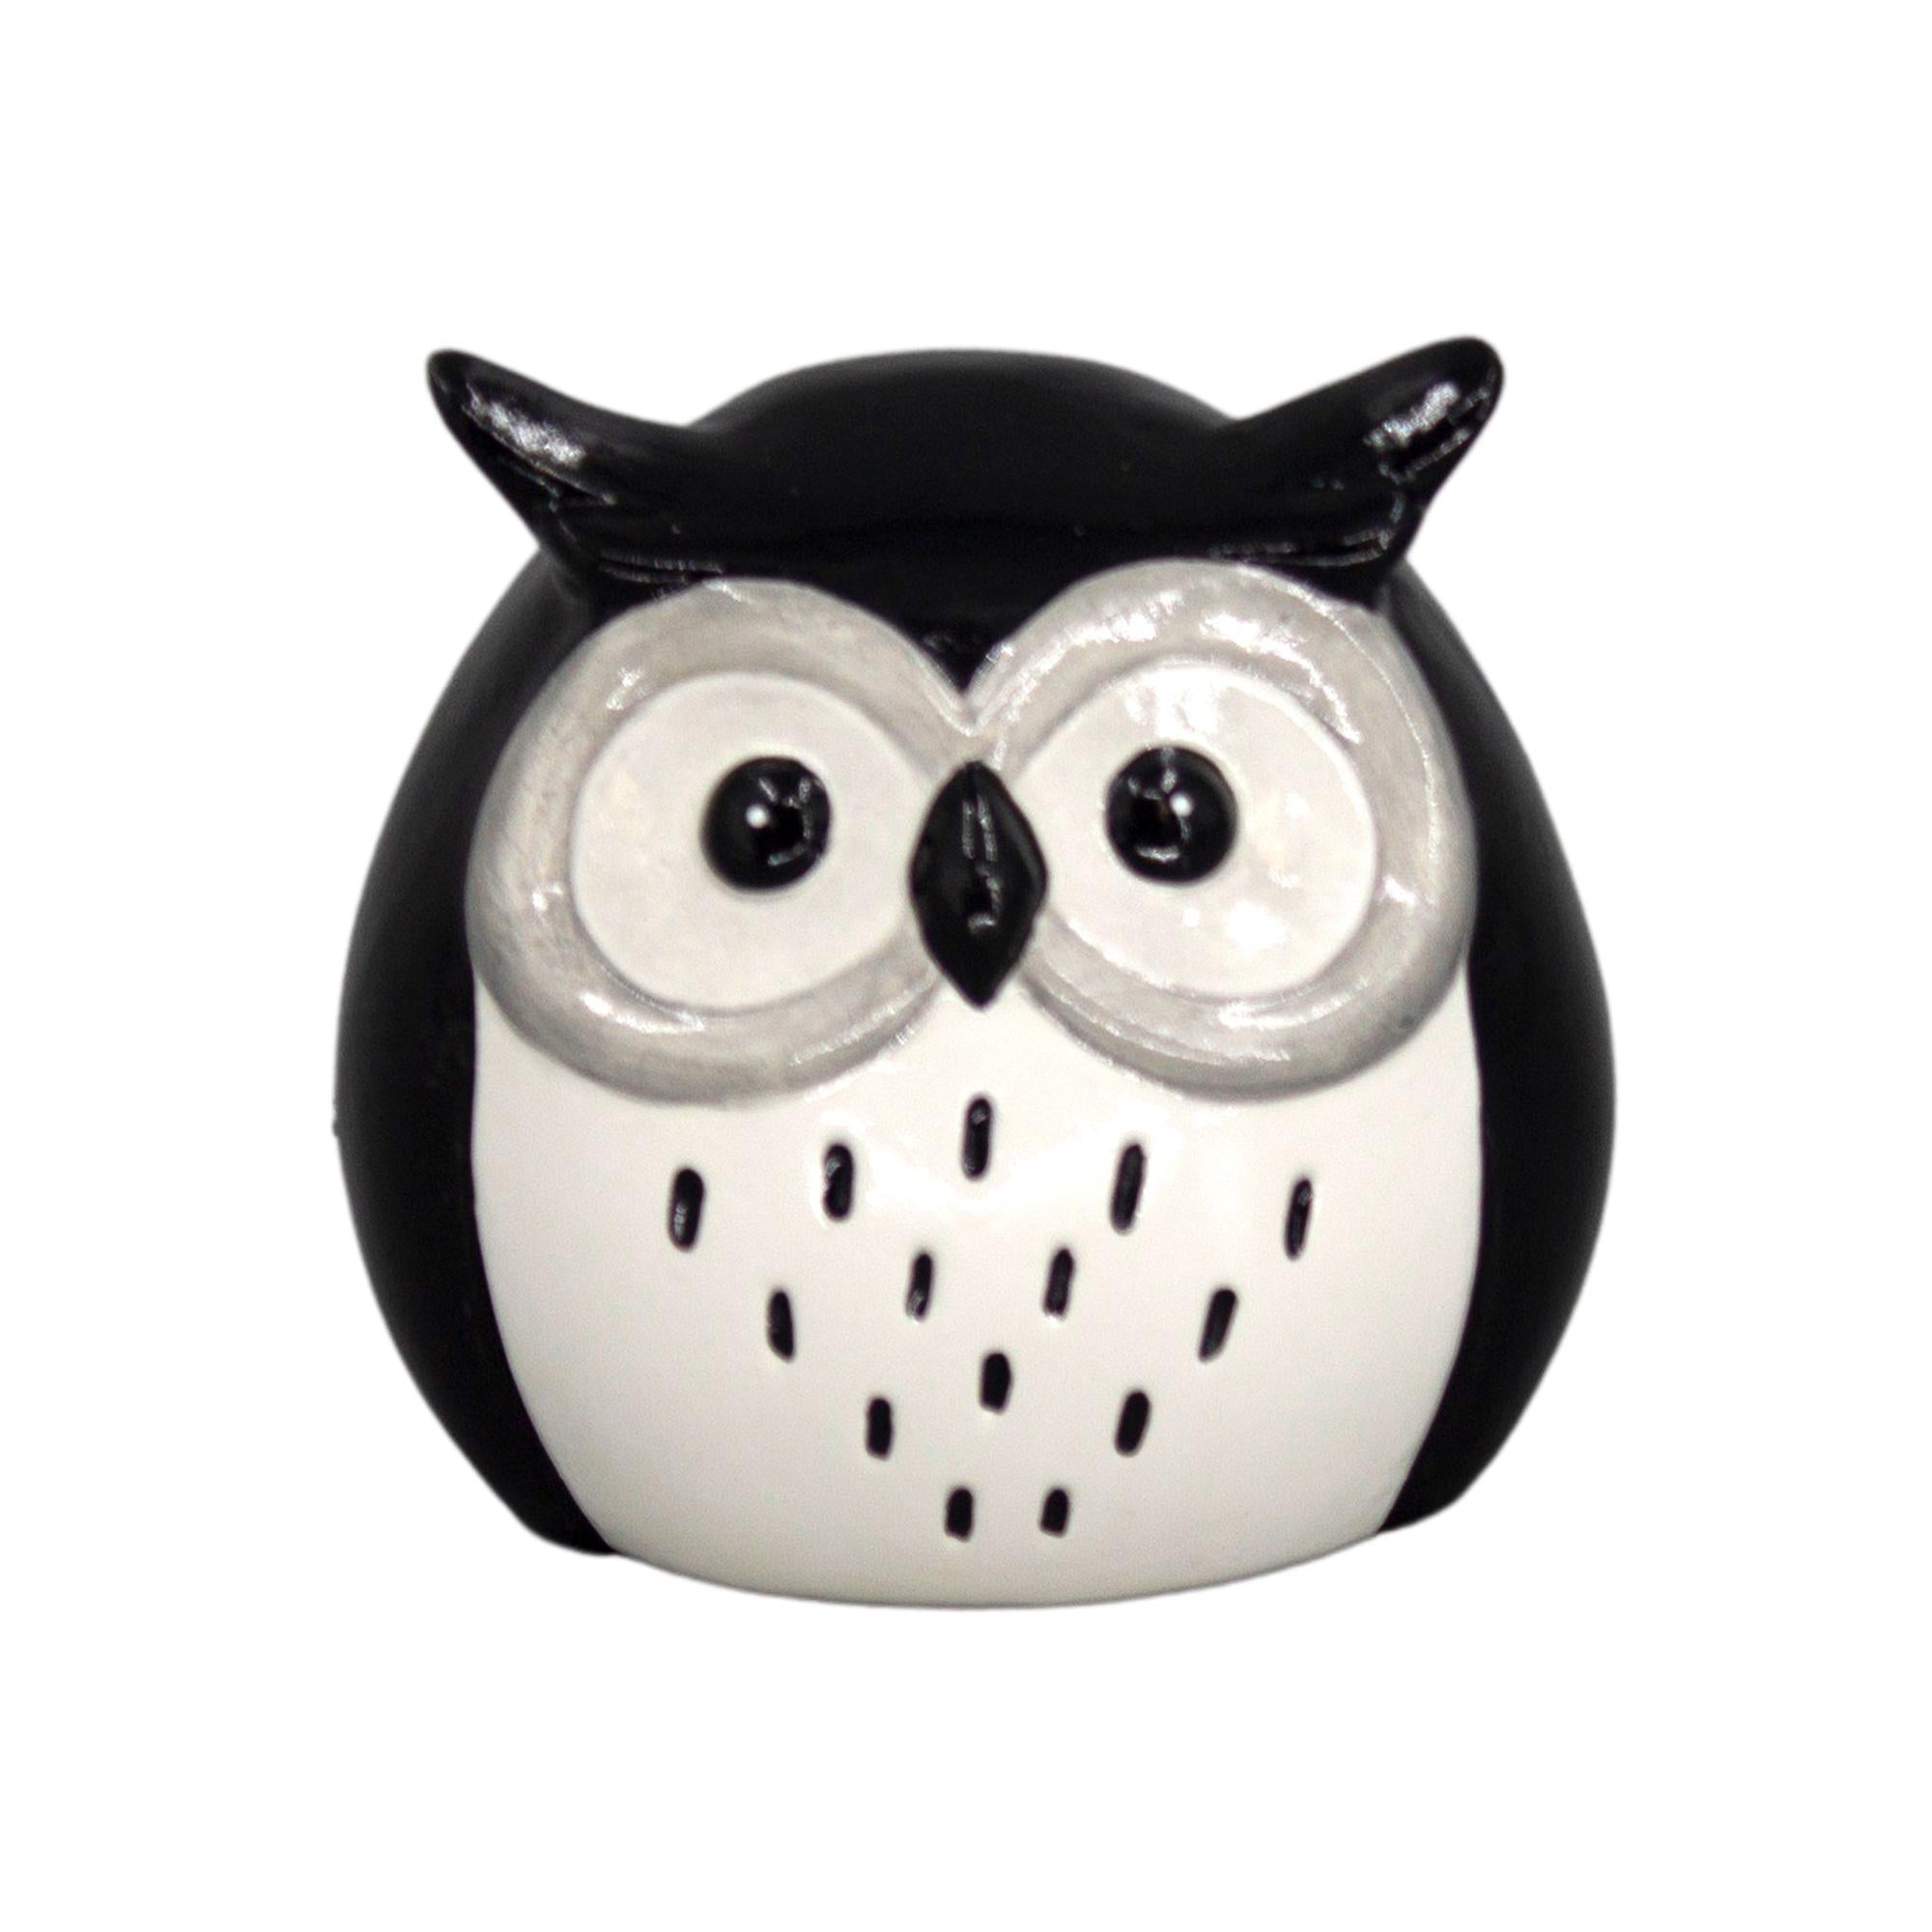 Black & White Porcelain Owl - White Front - 3.9"H